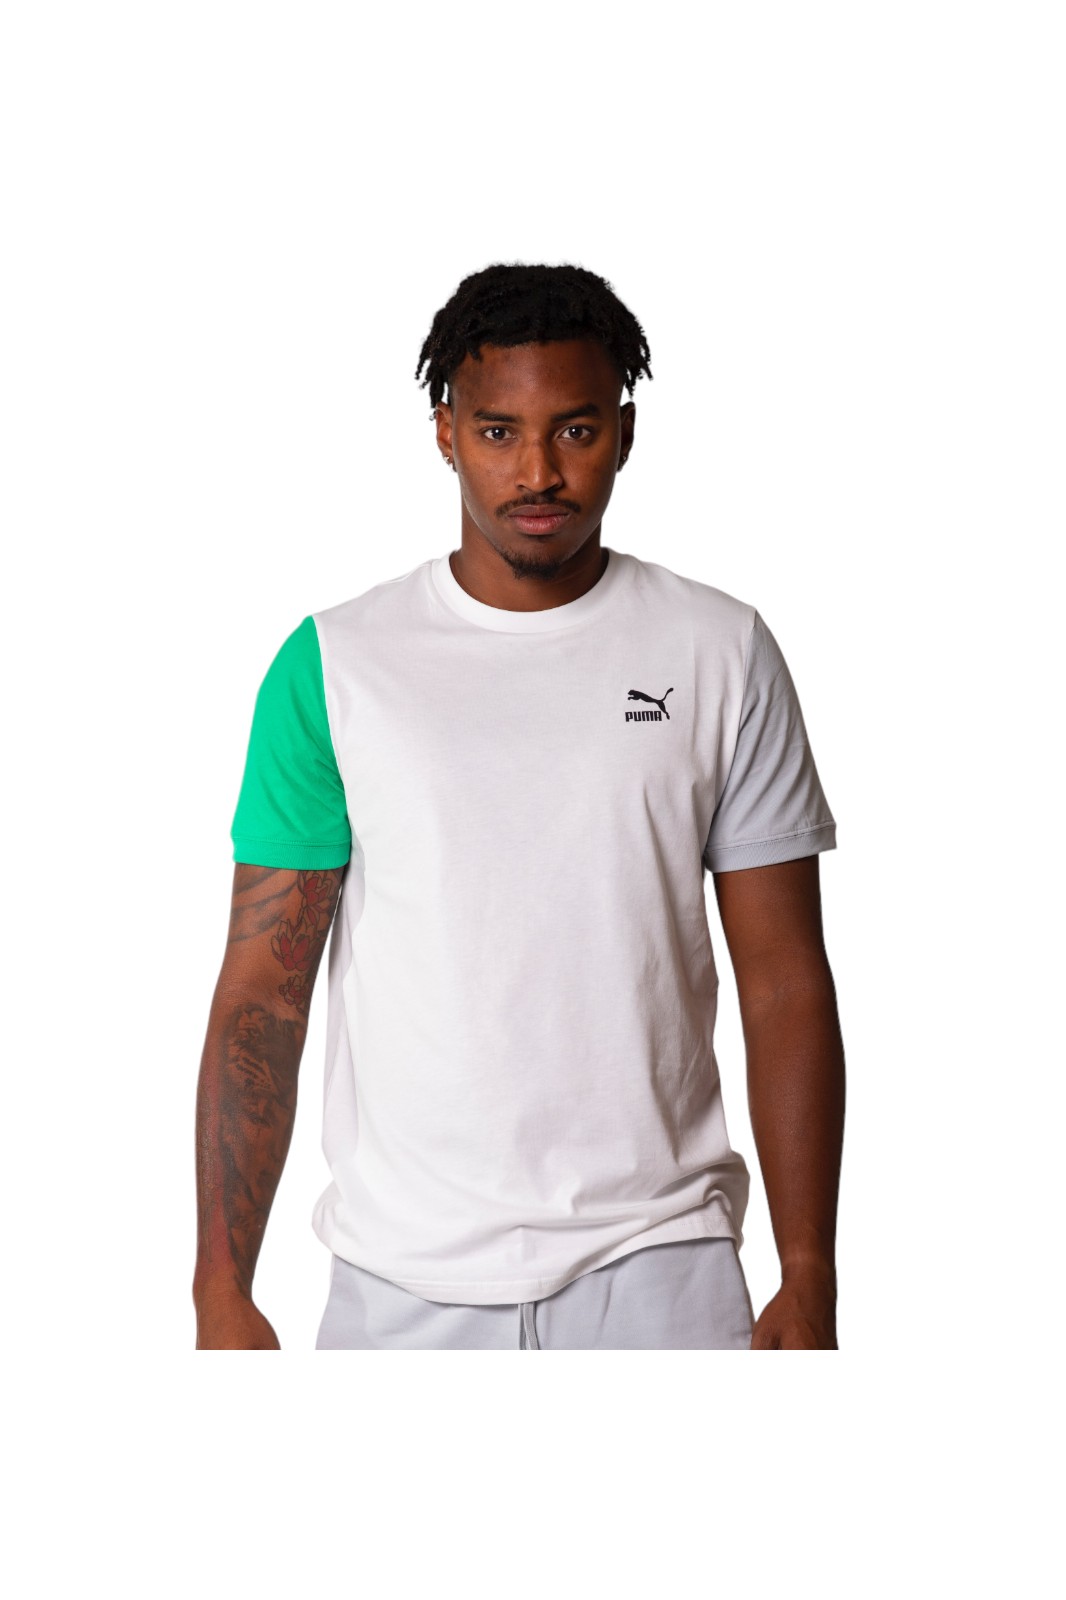 Puma Classics Block T-Shirt in Weiß und Grün